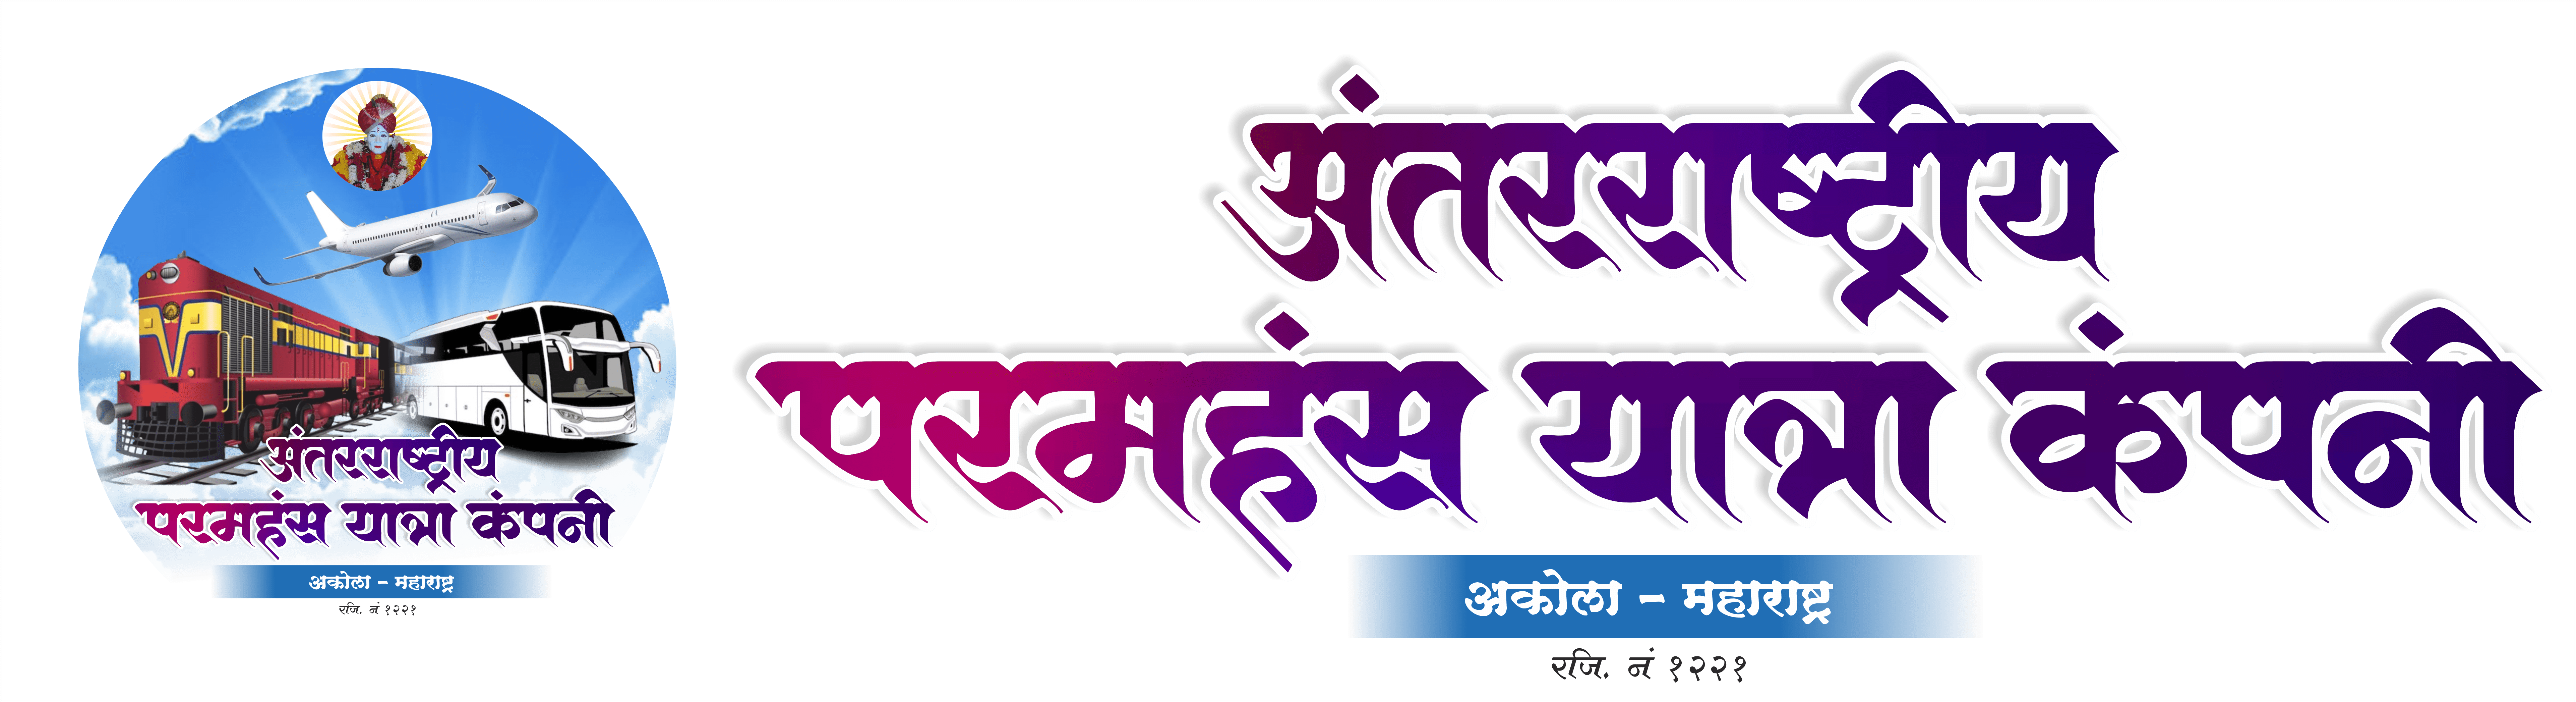 Paramhans Yatra Company